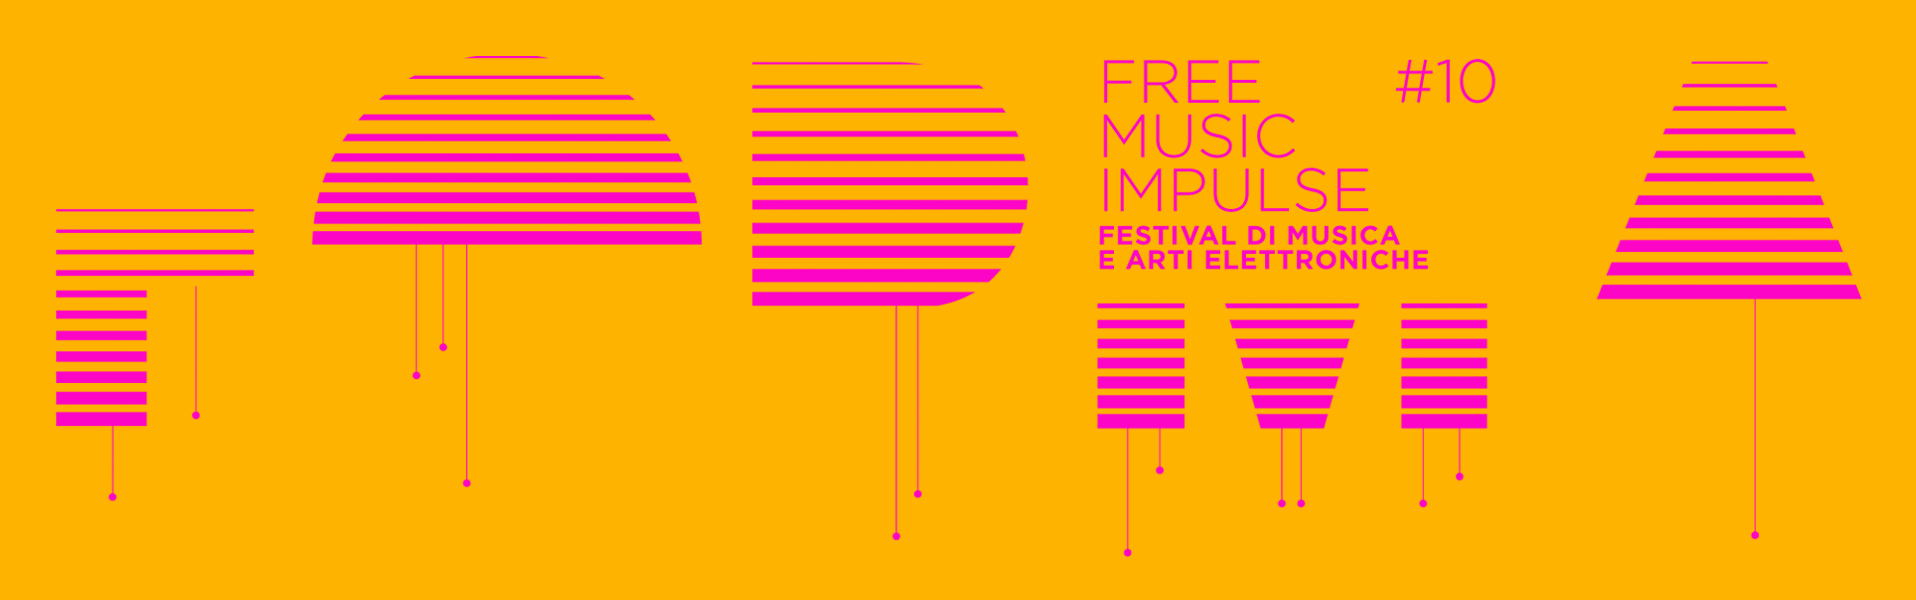 Al momento stai visualizzando FORMA Free Music Impulse: dal 4 ottobre al 2 novembre in Fvg l’edizione 10